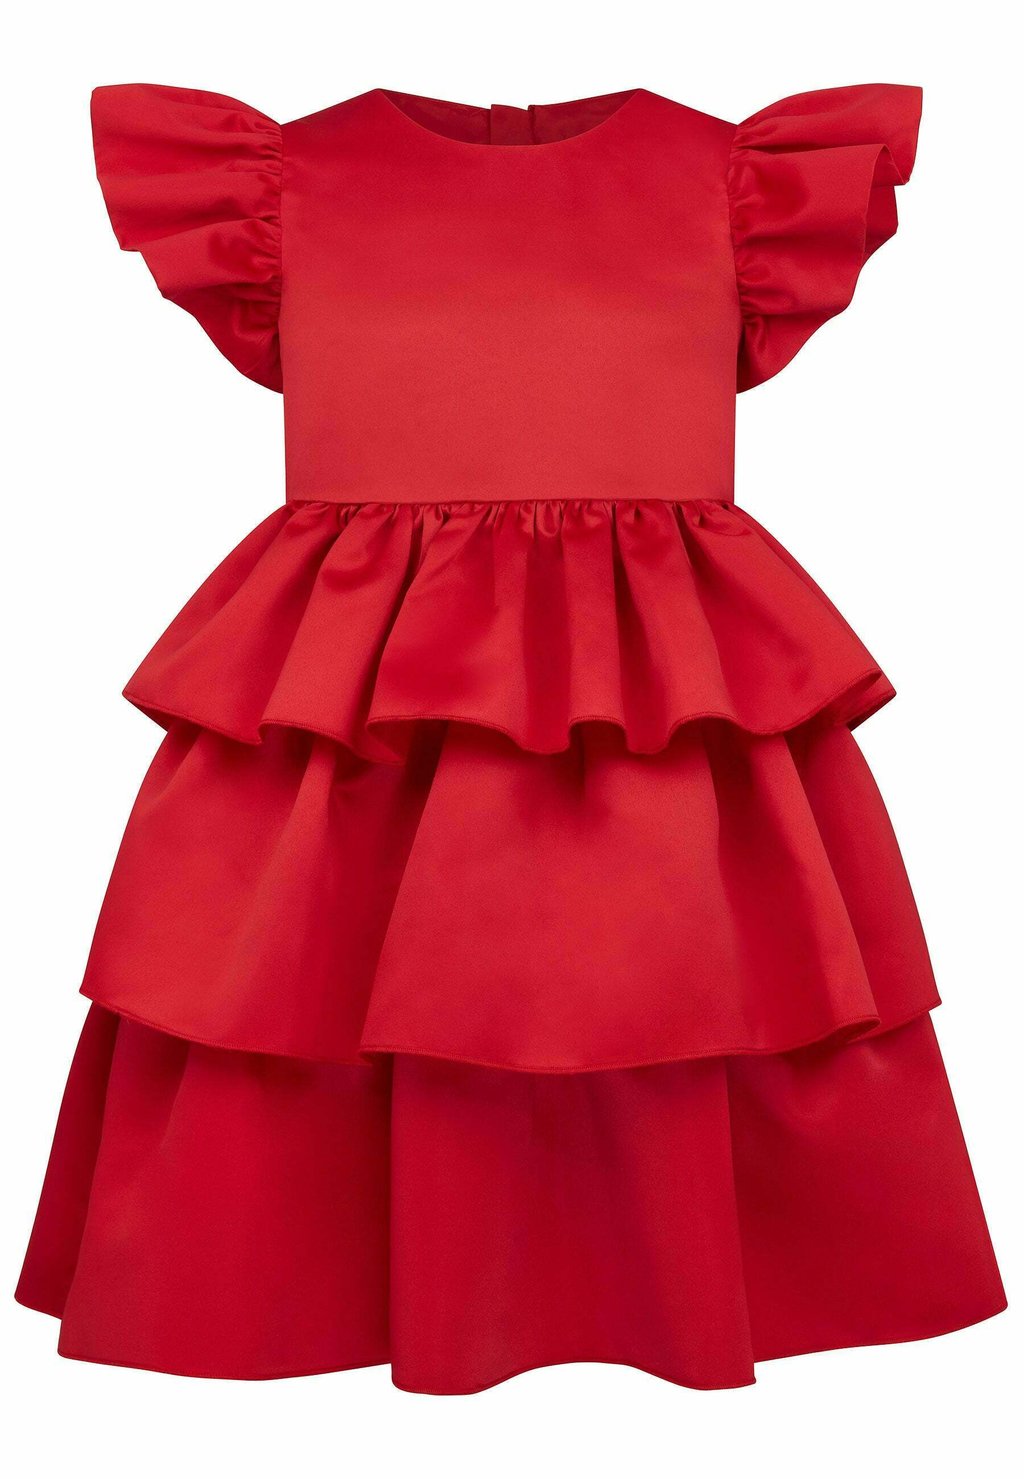 Коктейльное платье/праздничное платье SCARLETT FRILL Holly Hastie, цвет red black holly red glove